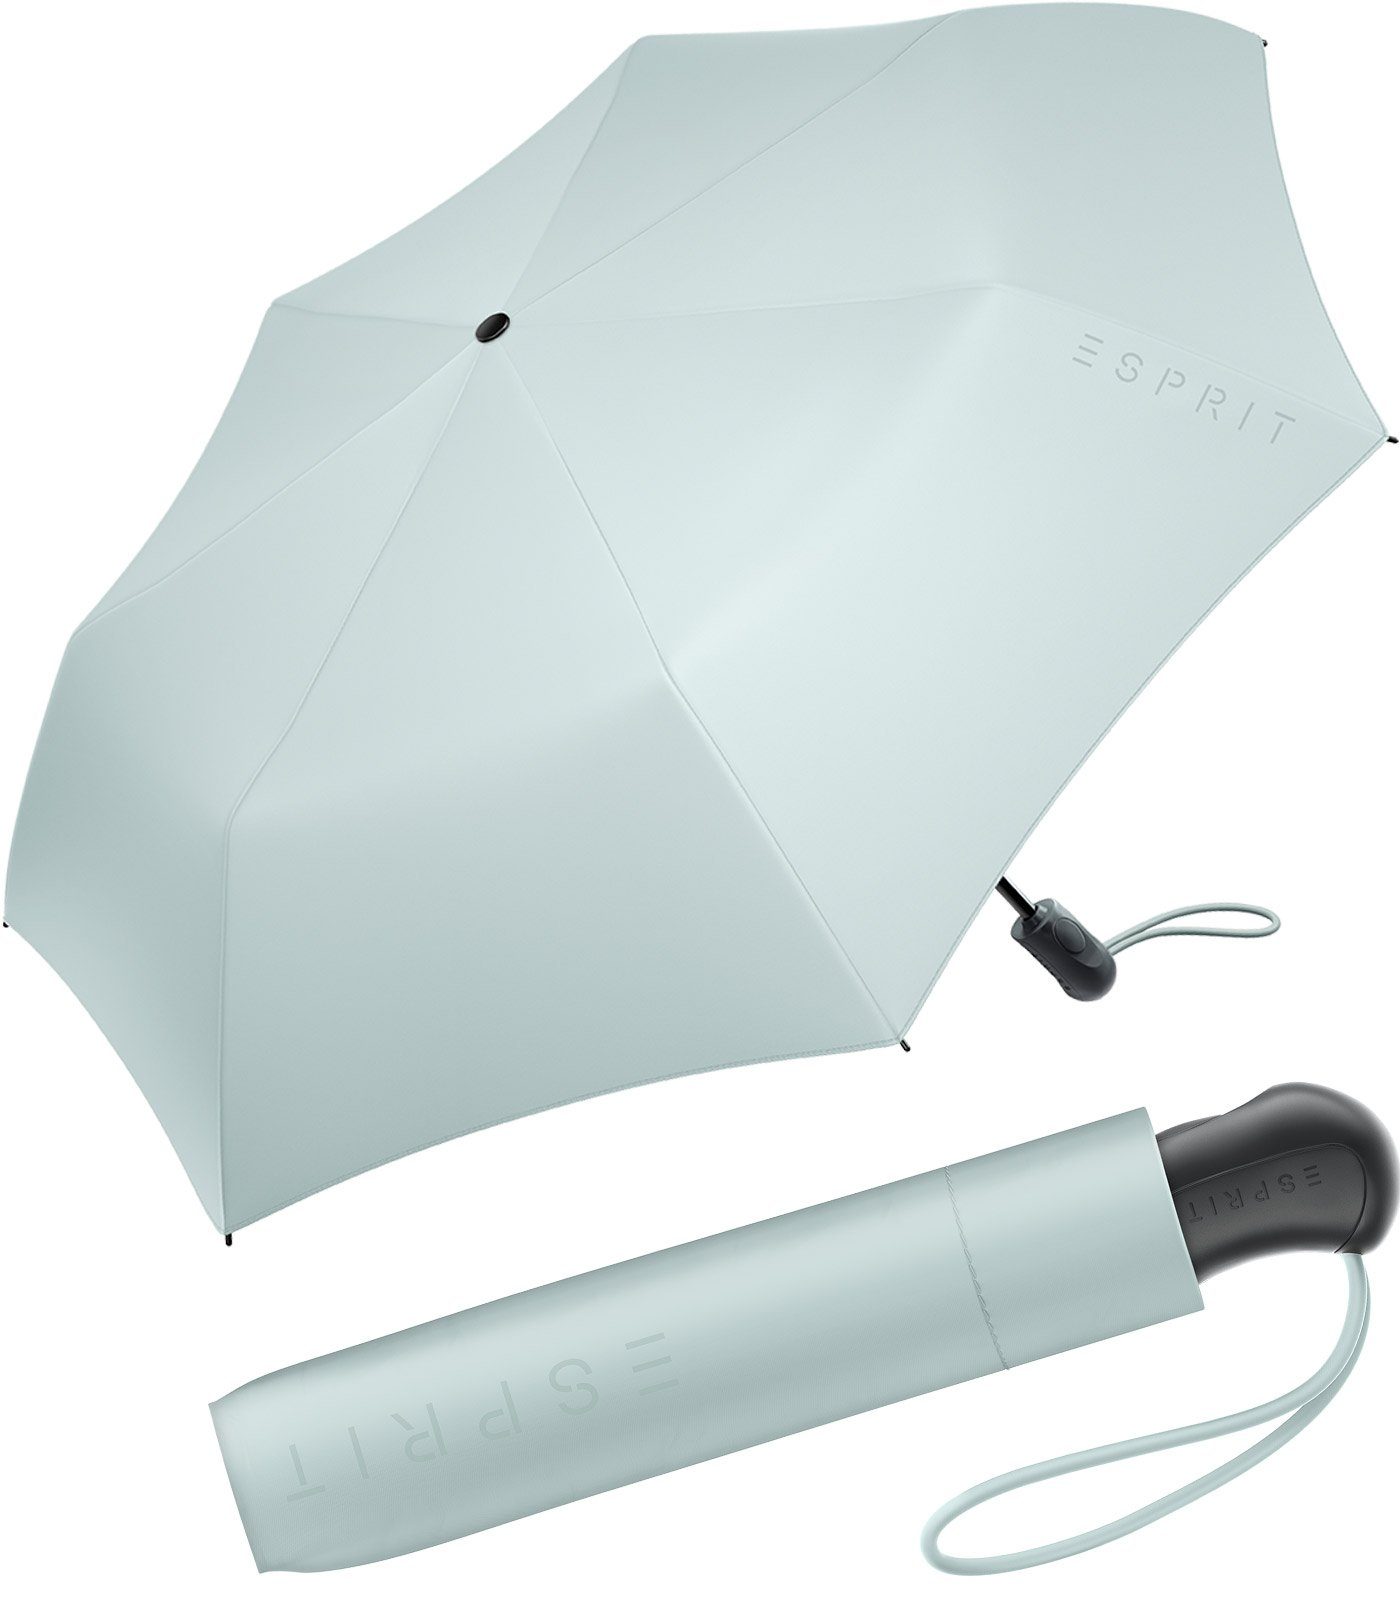 Esprit Taschenregenschirm Damen Easymatic Light Auf-Zu Automatik FJ 2022, stabil und praktisch, in den neuen Trendfarben graublau